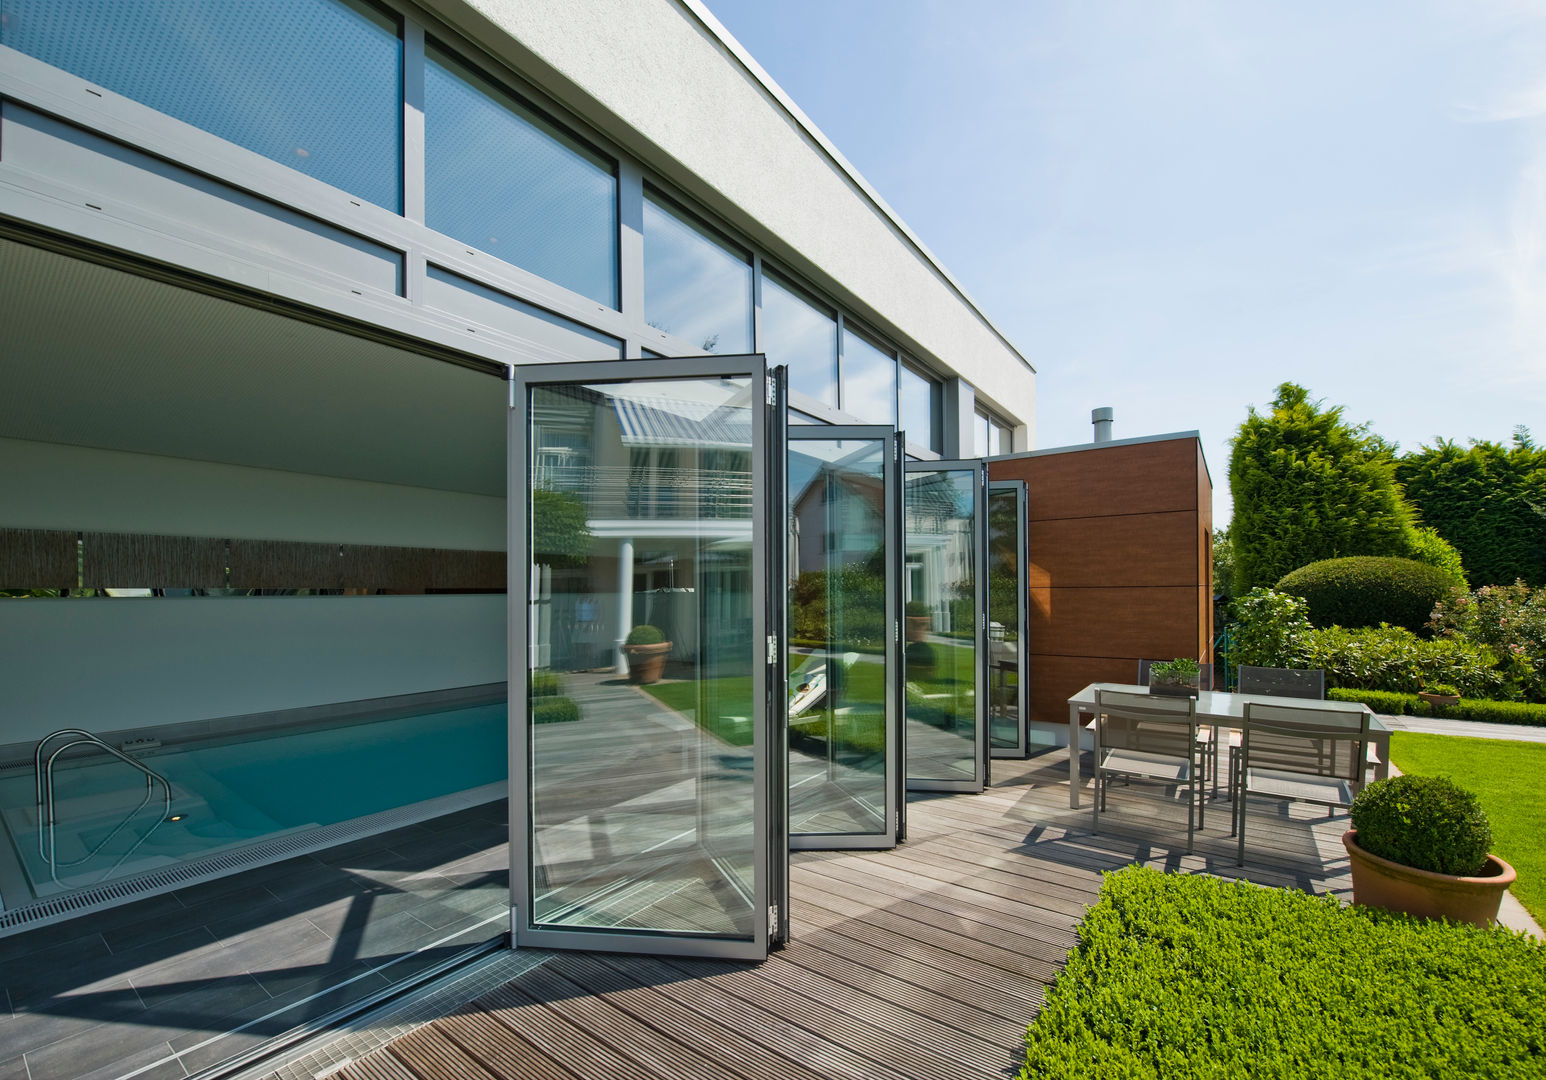 Glas-Faltwand Poolverglasung, Solarlux GmbH Solarlux GmbH Hồ bơi phong cách hiện đại